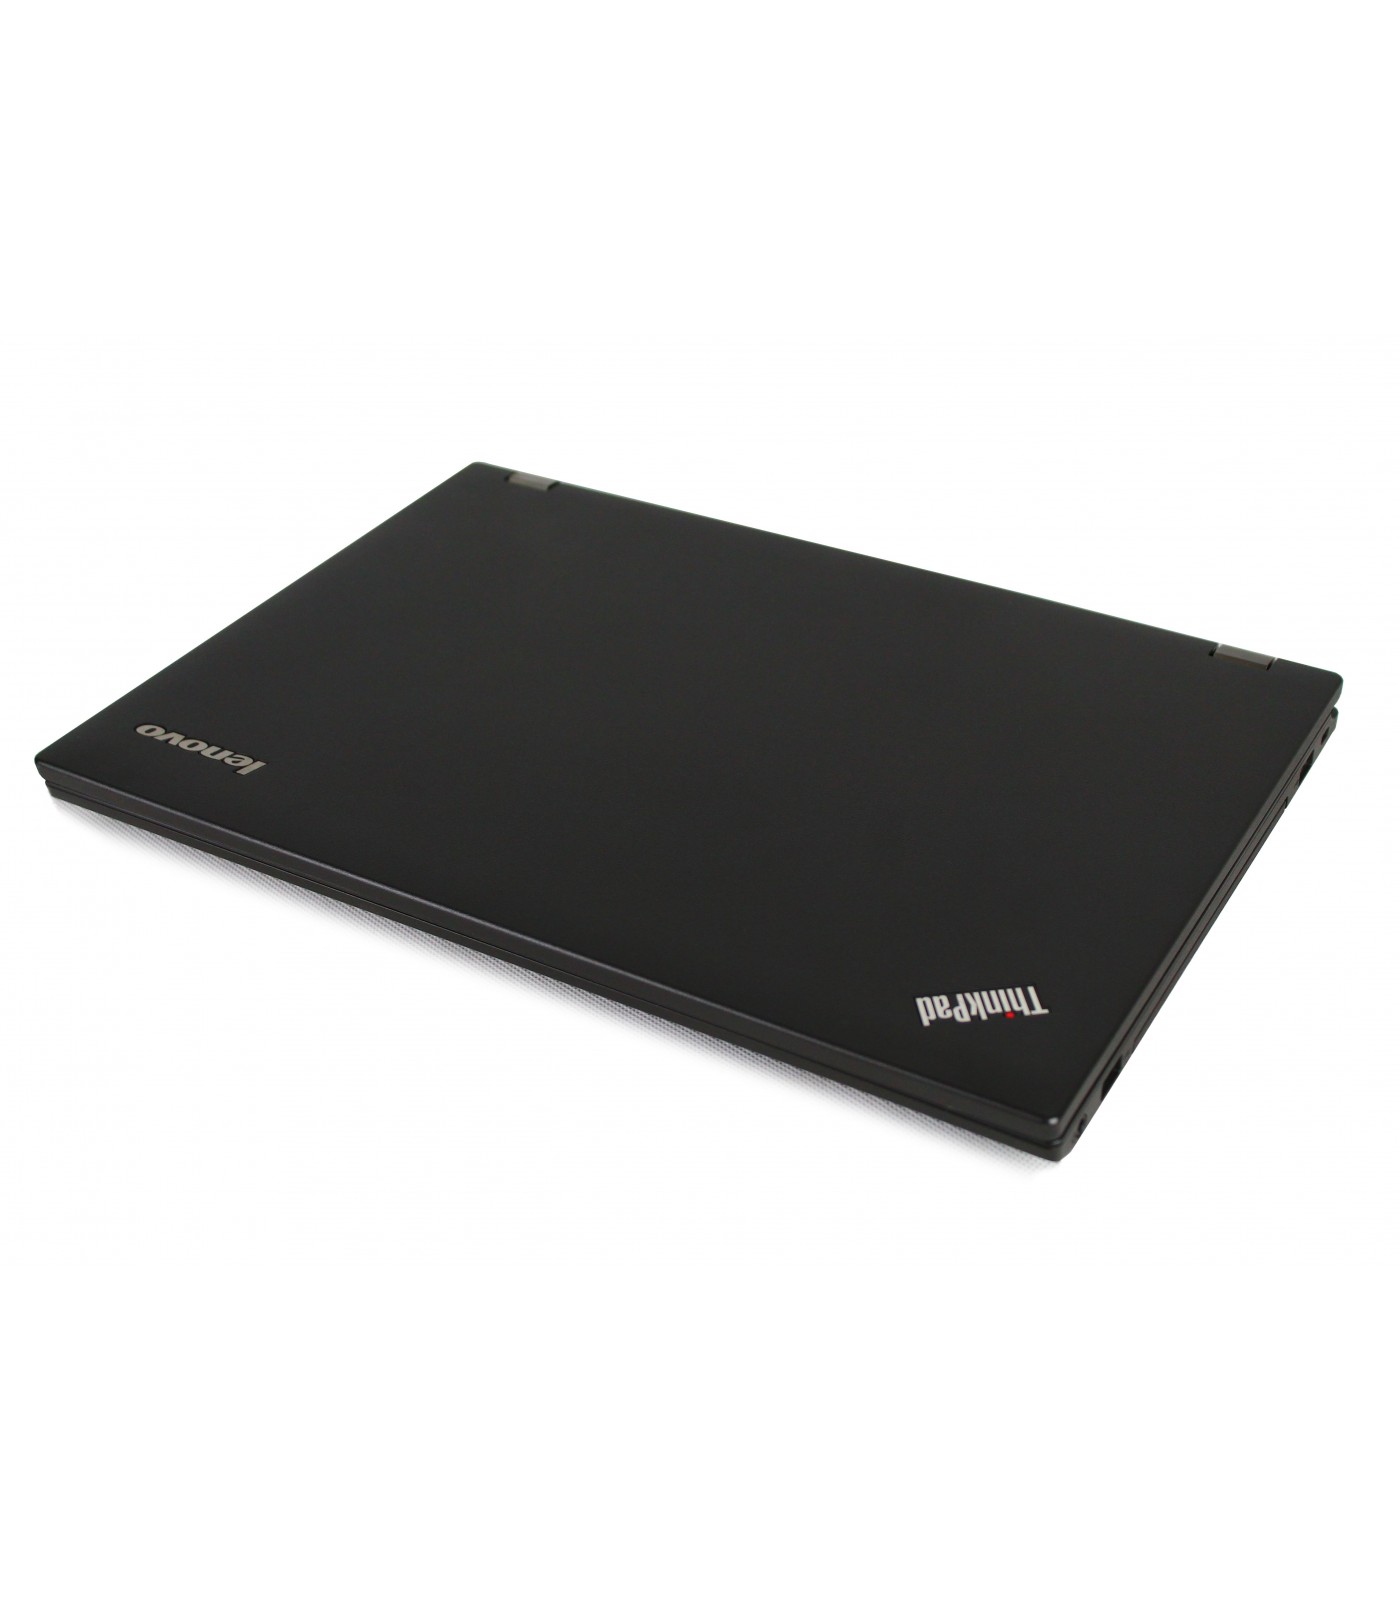 Poleasingowy laptop Lenovo ThinkPad L440 z Intel Core i5-4210M w klasie B.